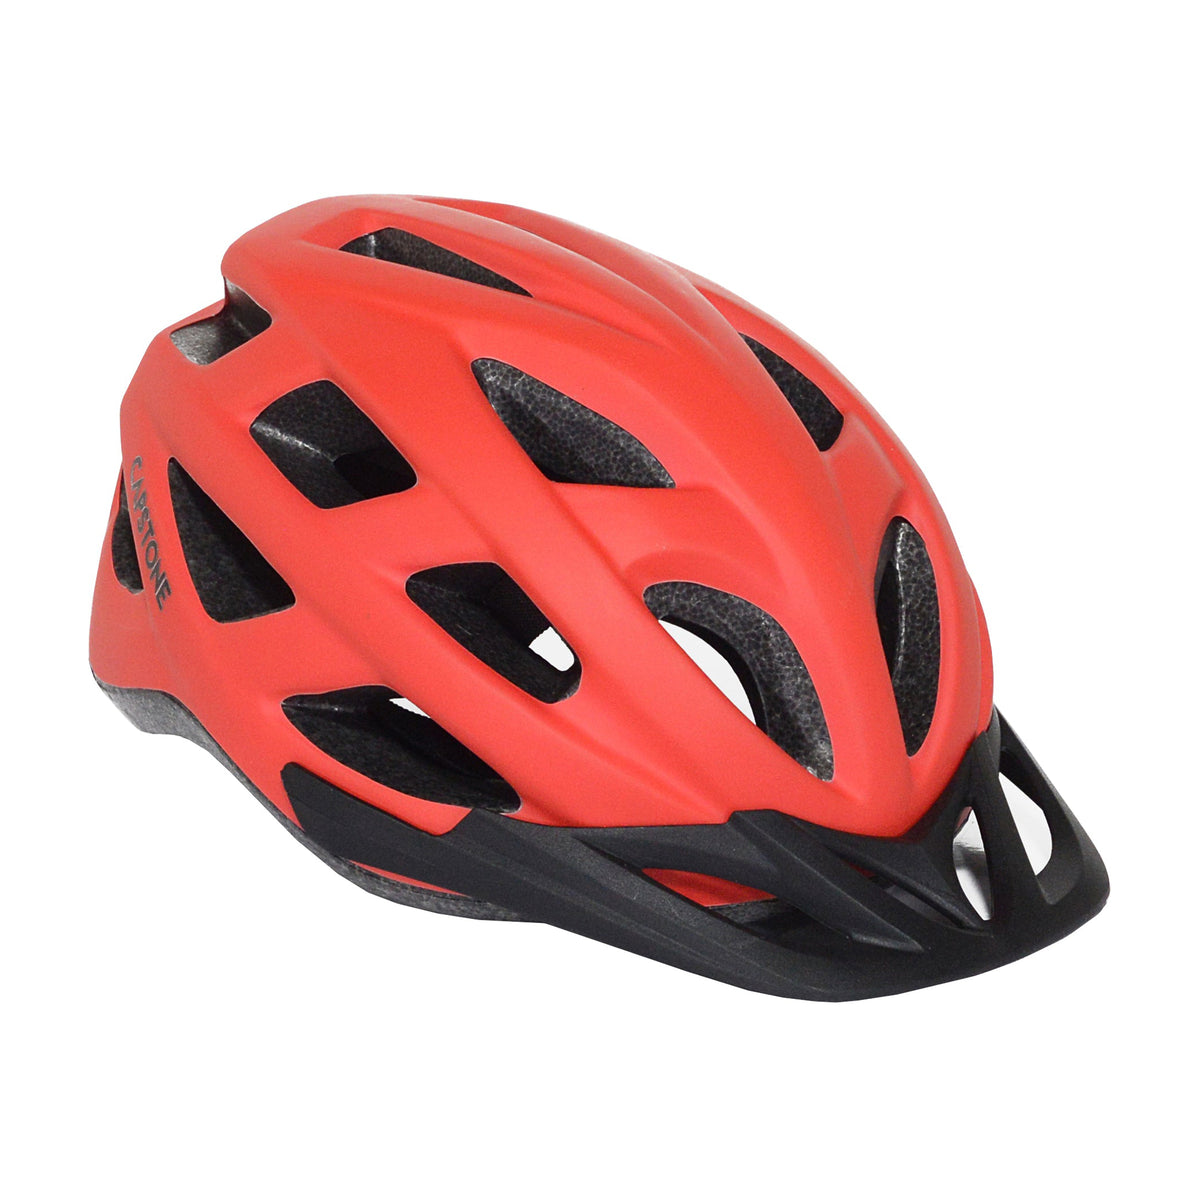 Capstone Adult Multi-Sport Helmet | Helmet for Adults Ages 13+